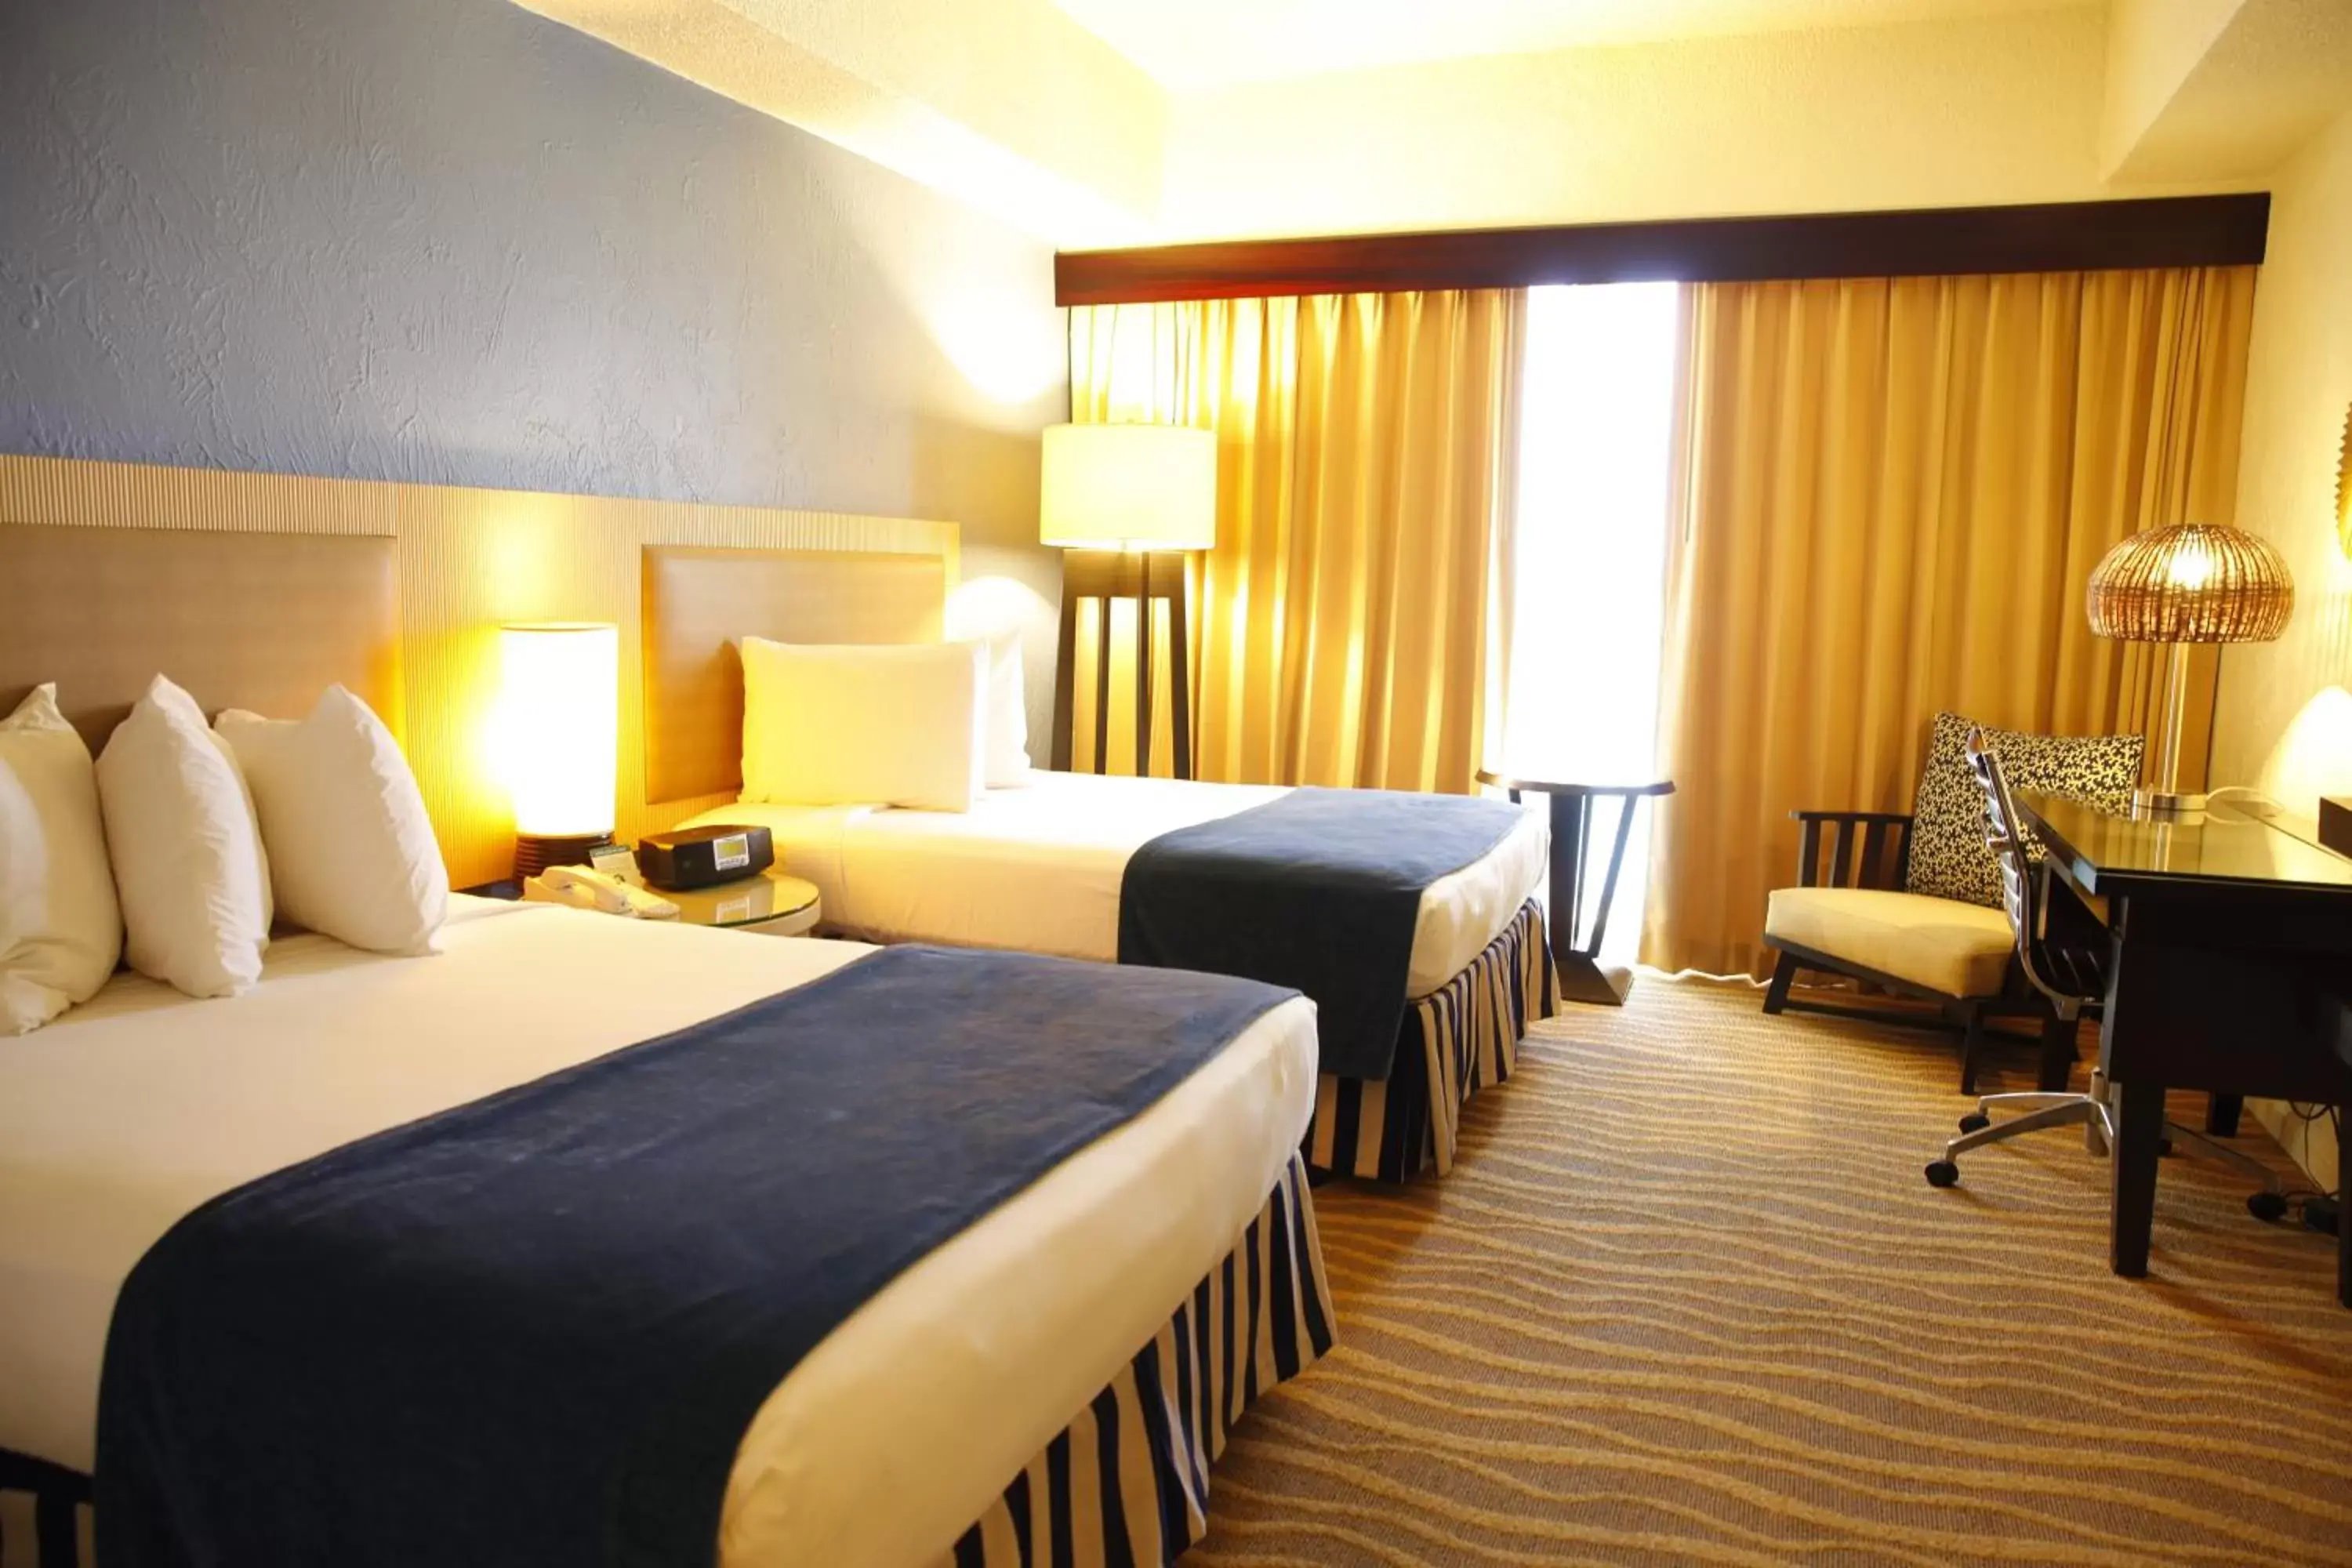 Bedroom, Bed in Windward Passage Hotel